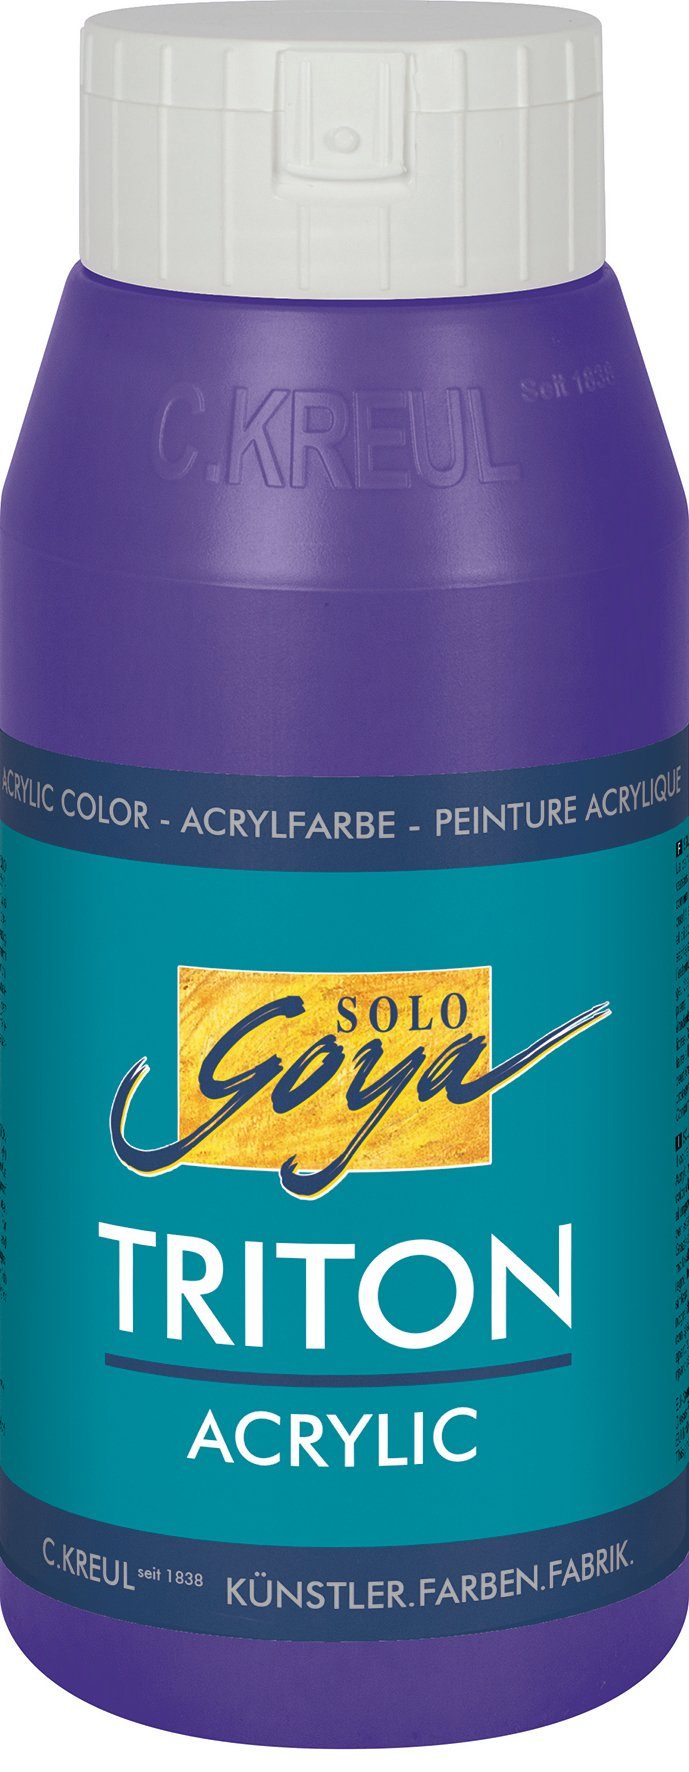 Kreul Acrylfarbe Solo Goya Triton Violett Acrylic, ml 750